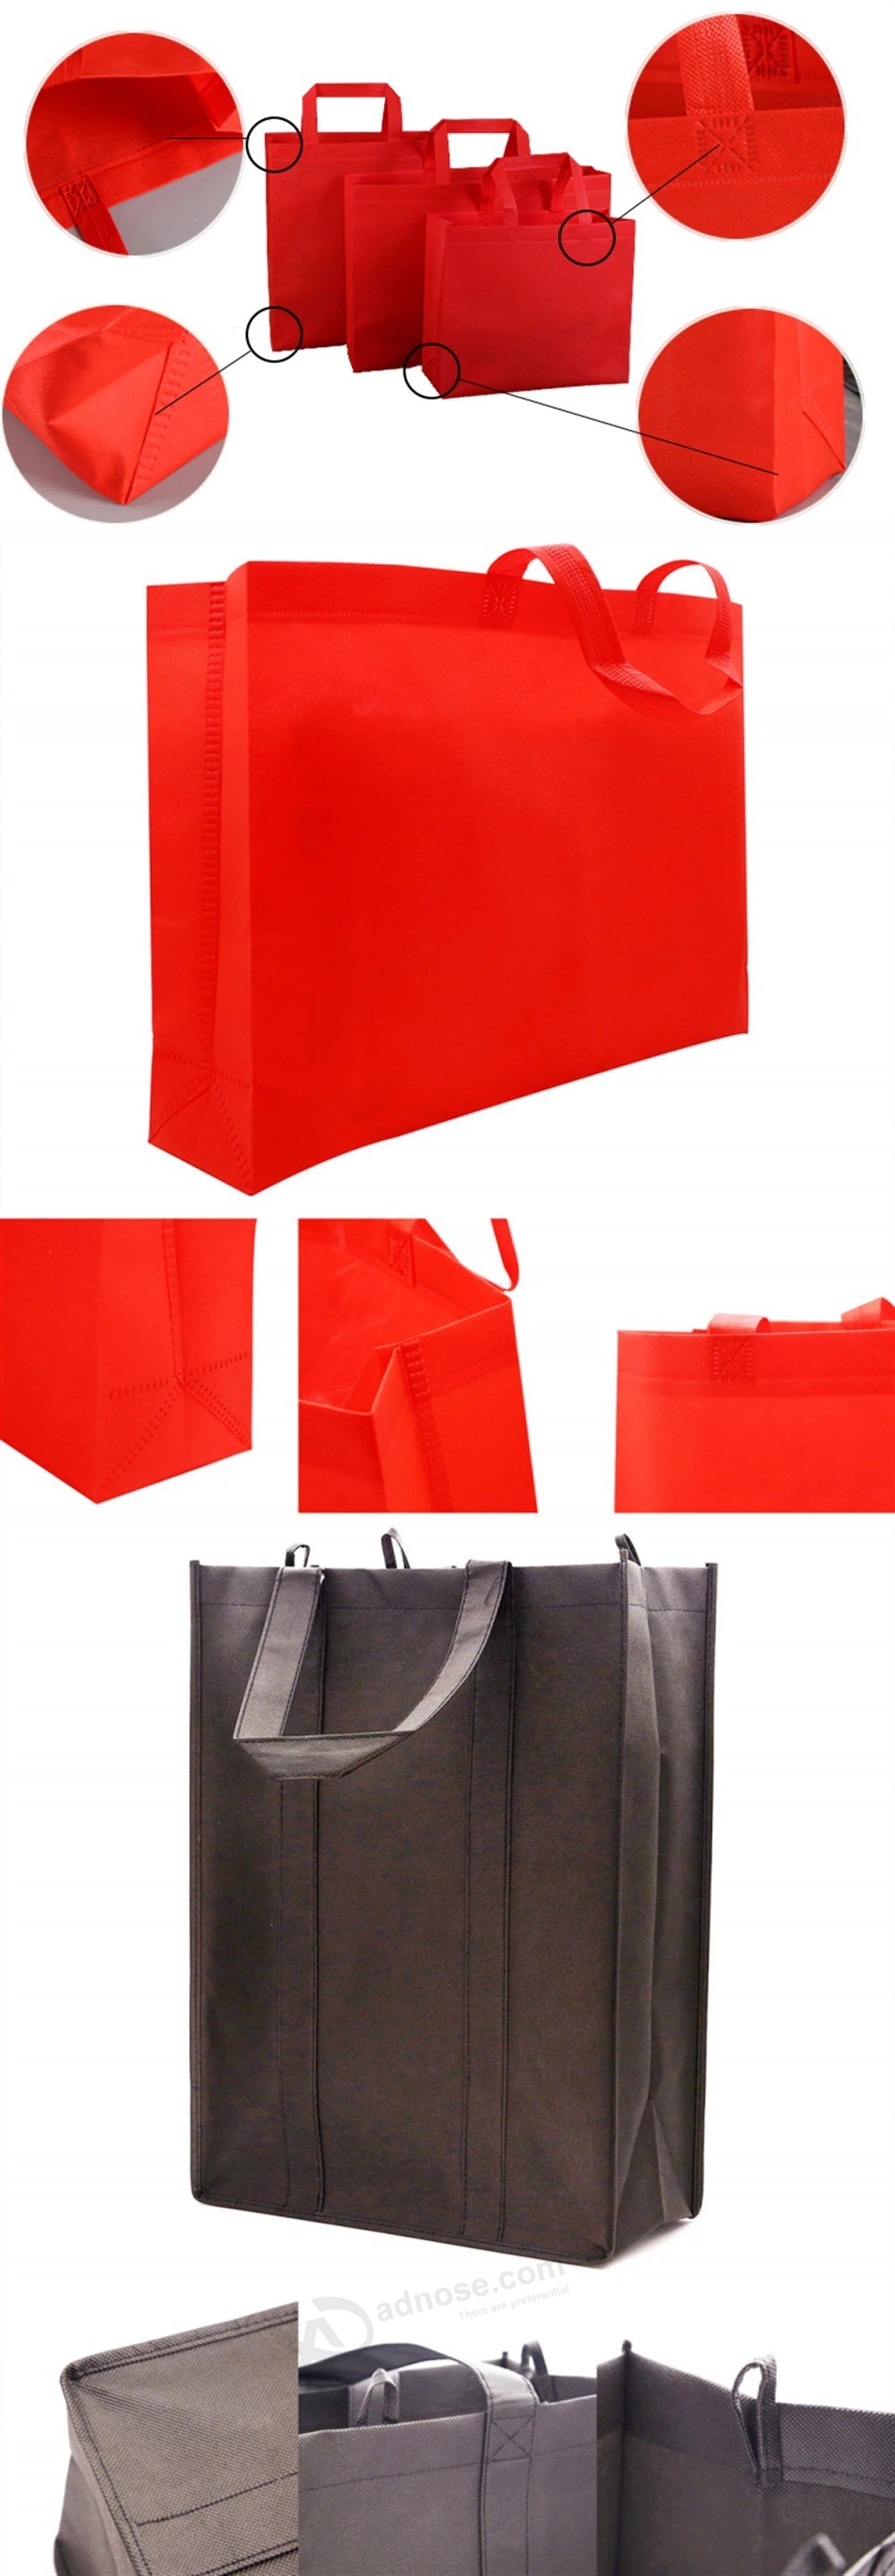 China Factory Supply Non-Woven Bag/Foldable Non Woven Shopping Bag/Logo Printed Non Woven Carrier Bag